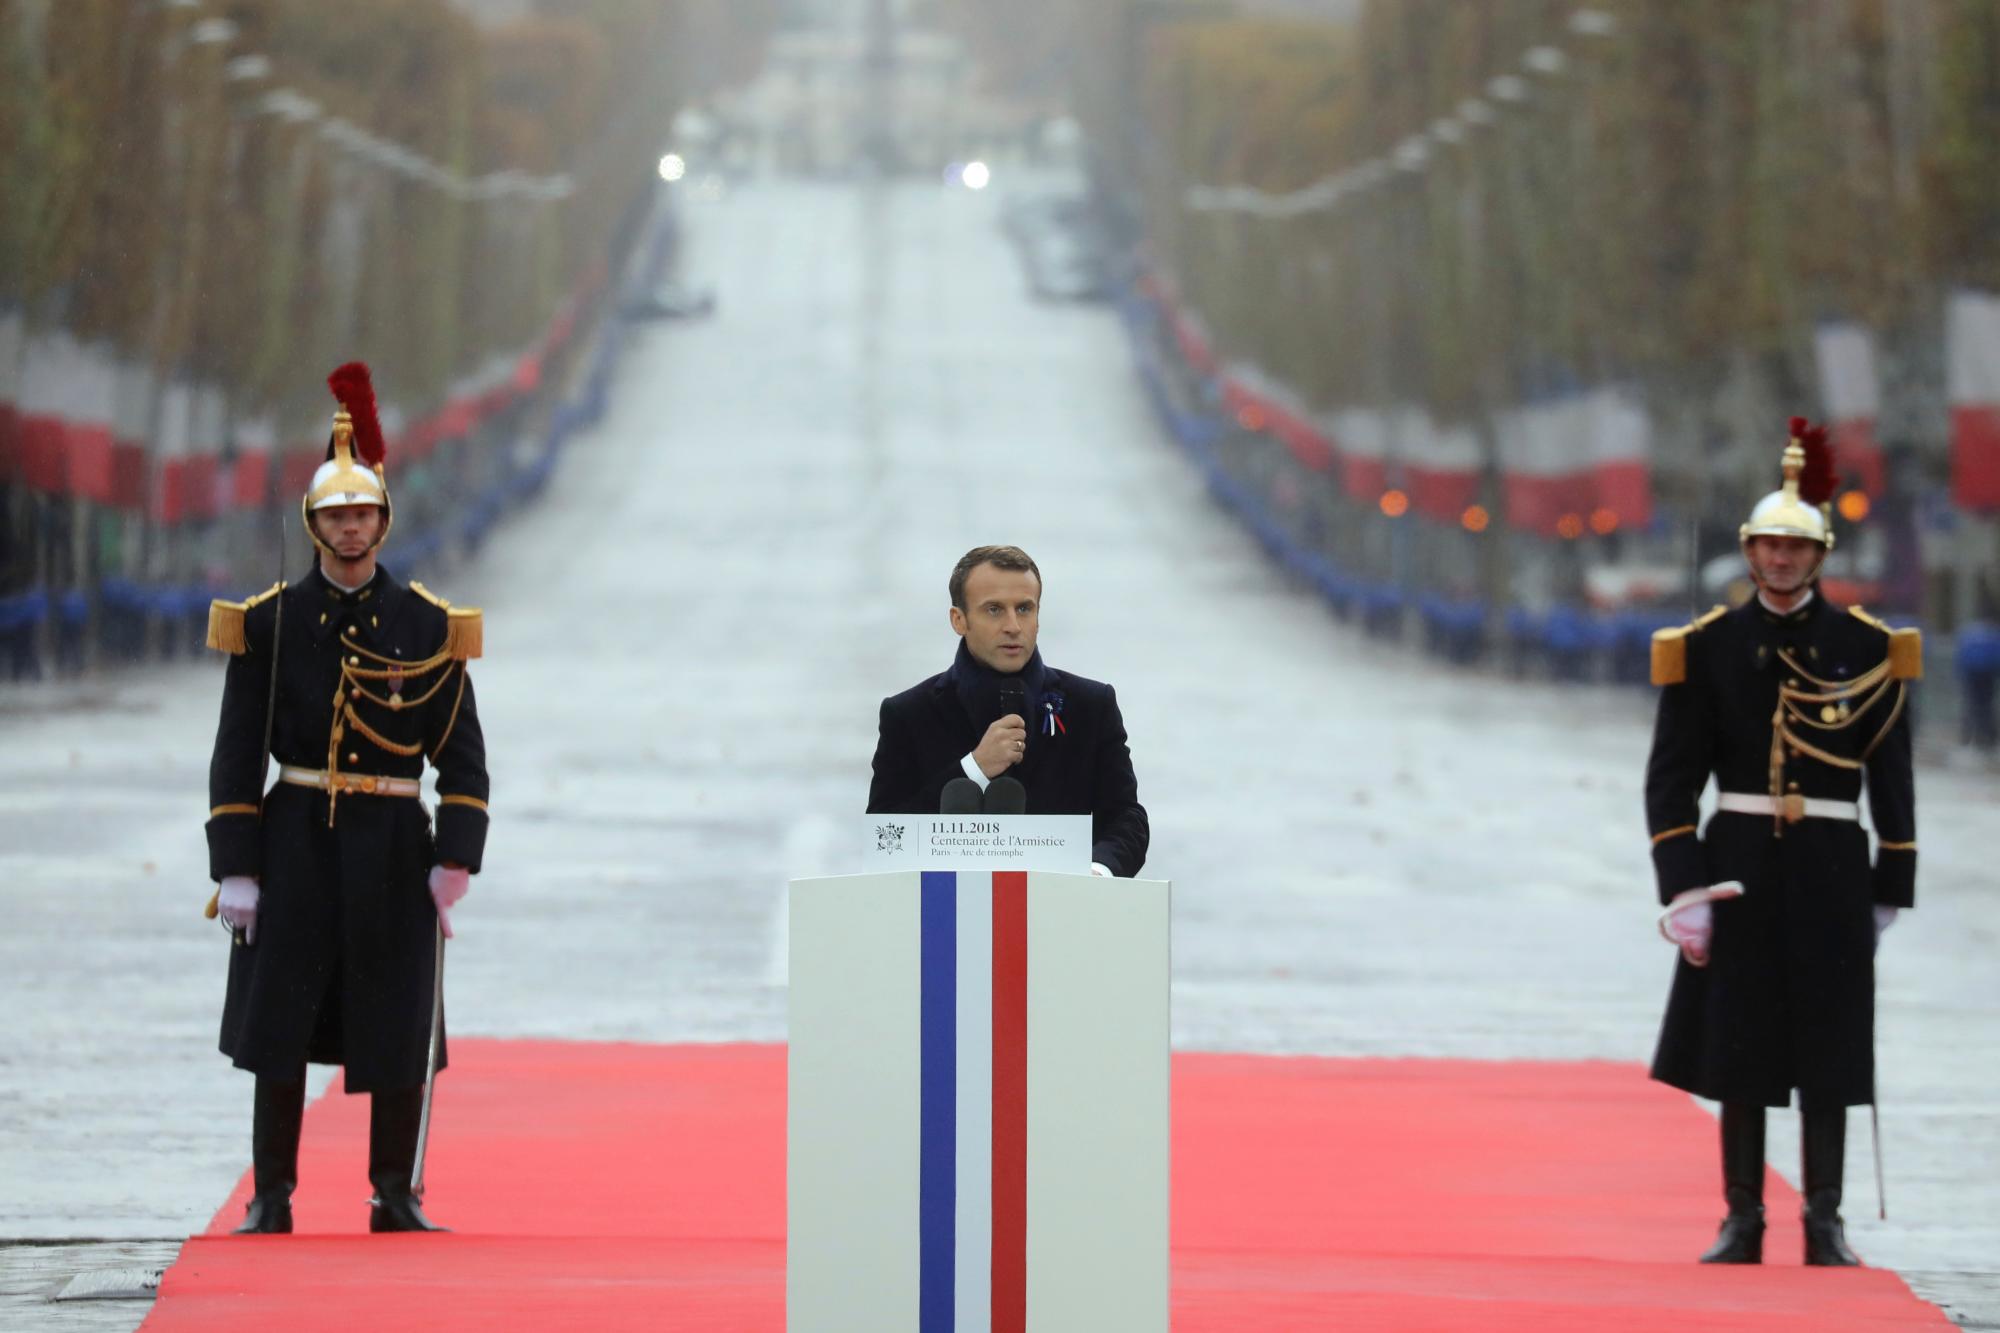 El presidente francés, Emmanuel Macron, pronuncia un discurso durante una ceremonia en el Arco de Triunfo de París como parte de las conmemoraciones del 100 aniversario del armisticio del 11 de noviembre de 1918, que pone fin a la Primera Guerra Mundial.